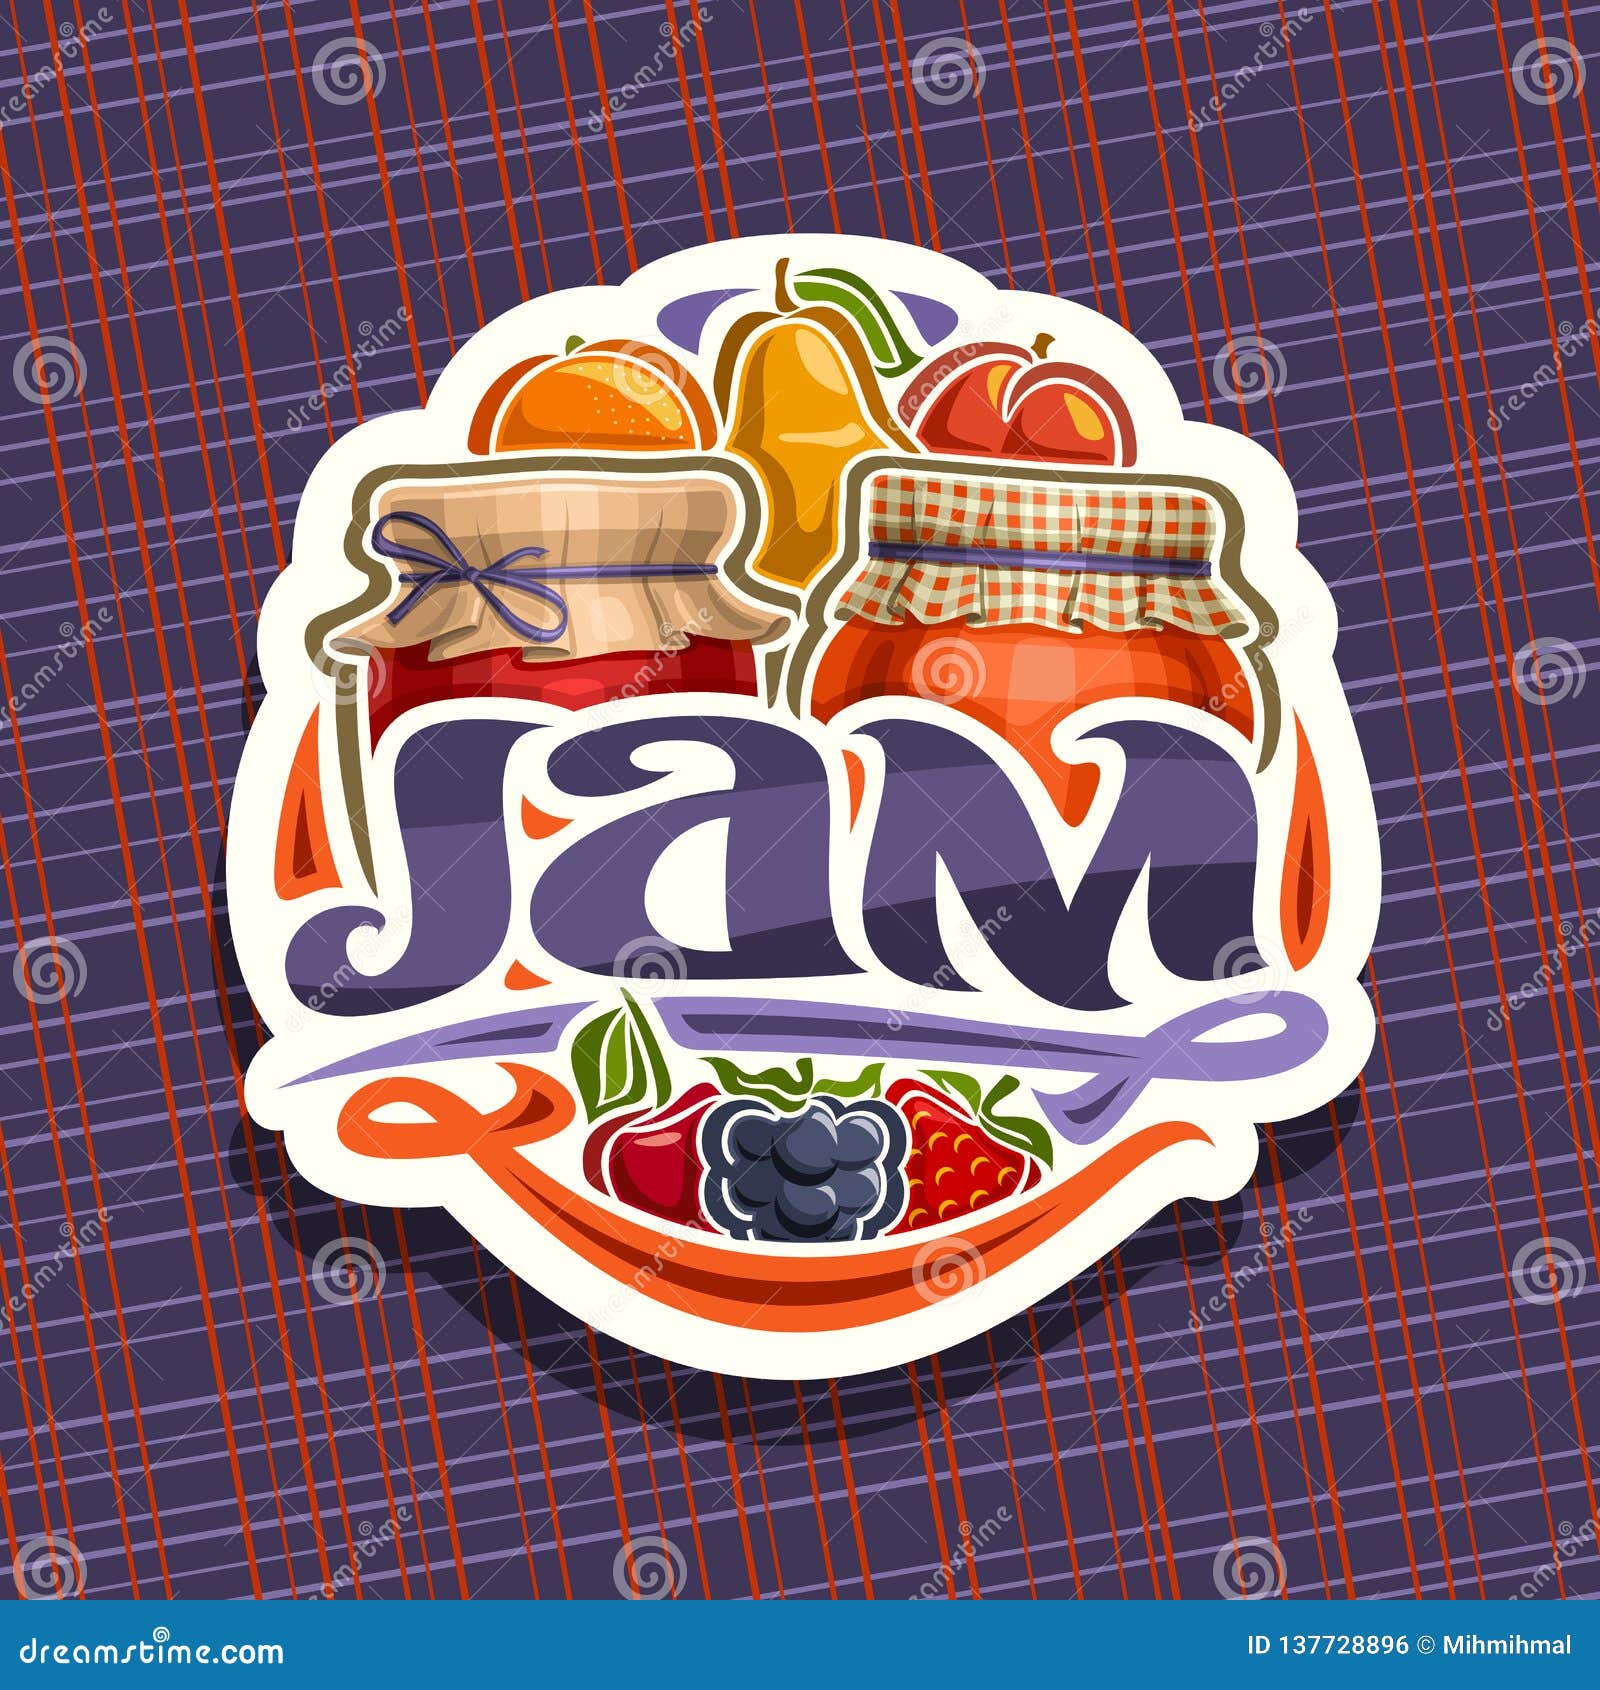 Vector logo  for fruit Jam  stock vector Illustration of 